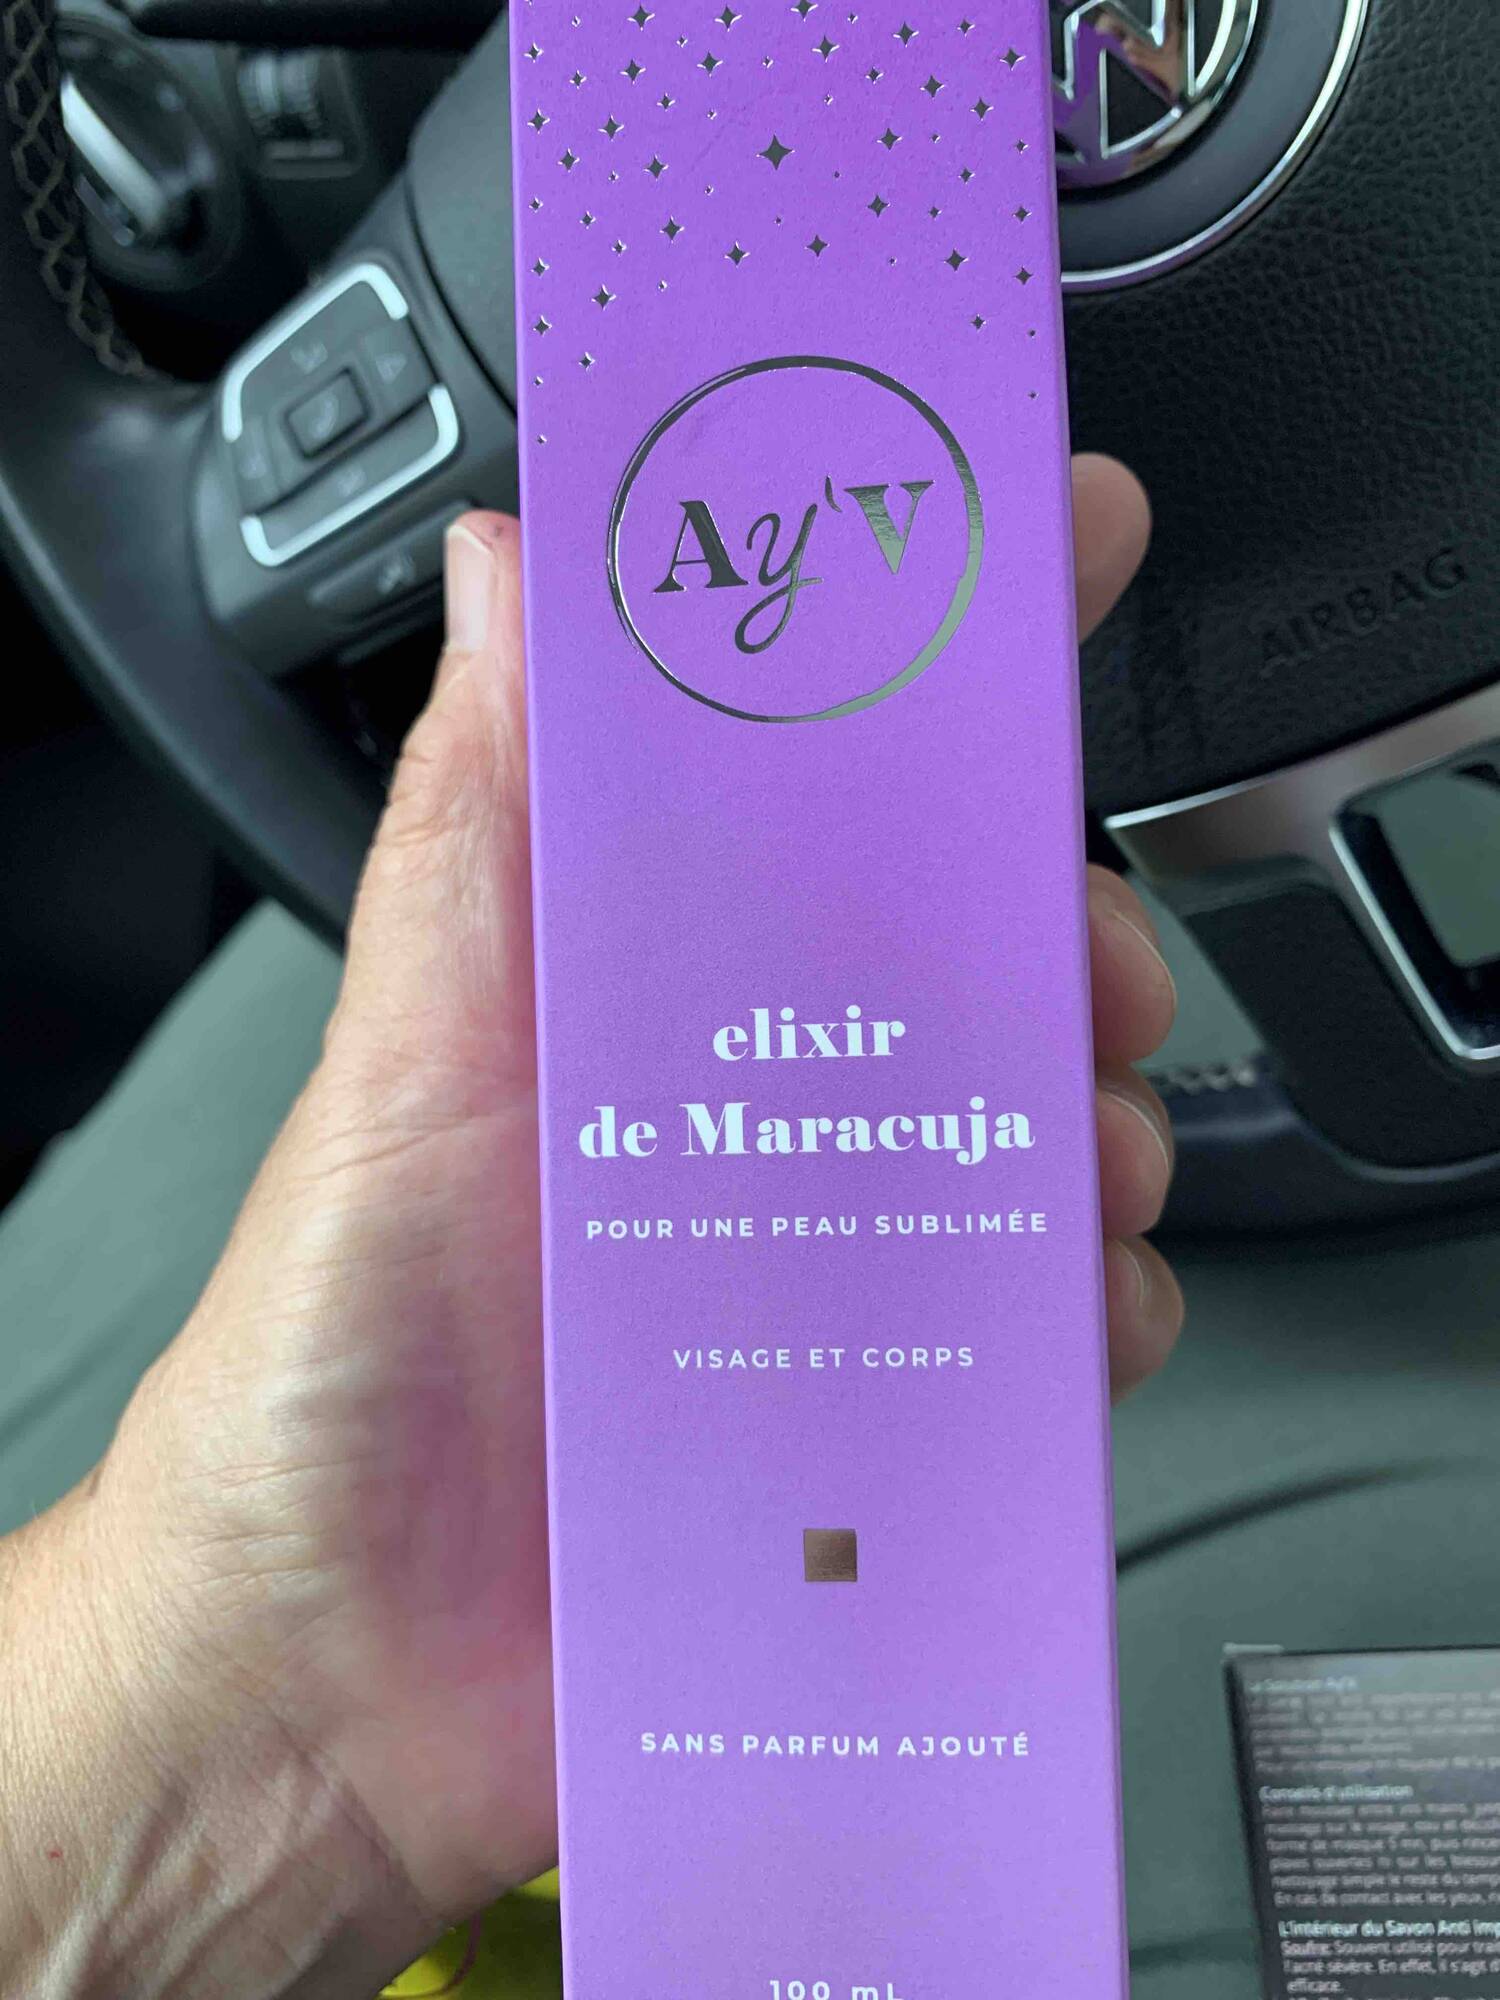 AY'V - Elixir de Maracuja pour une peau sublimée visage et corps